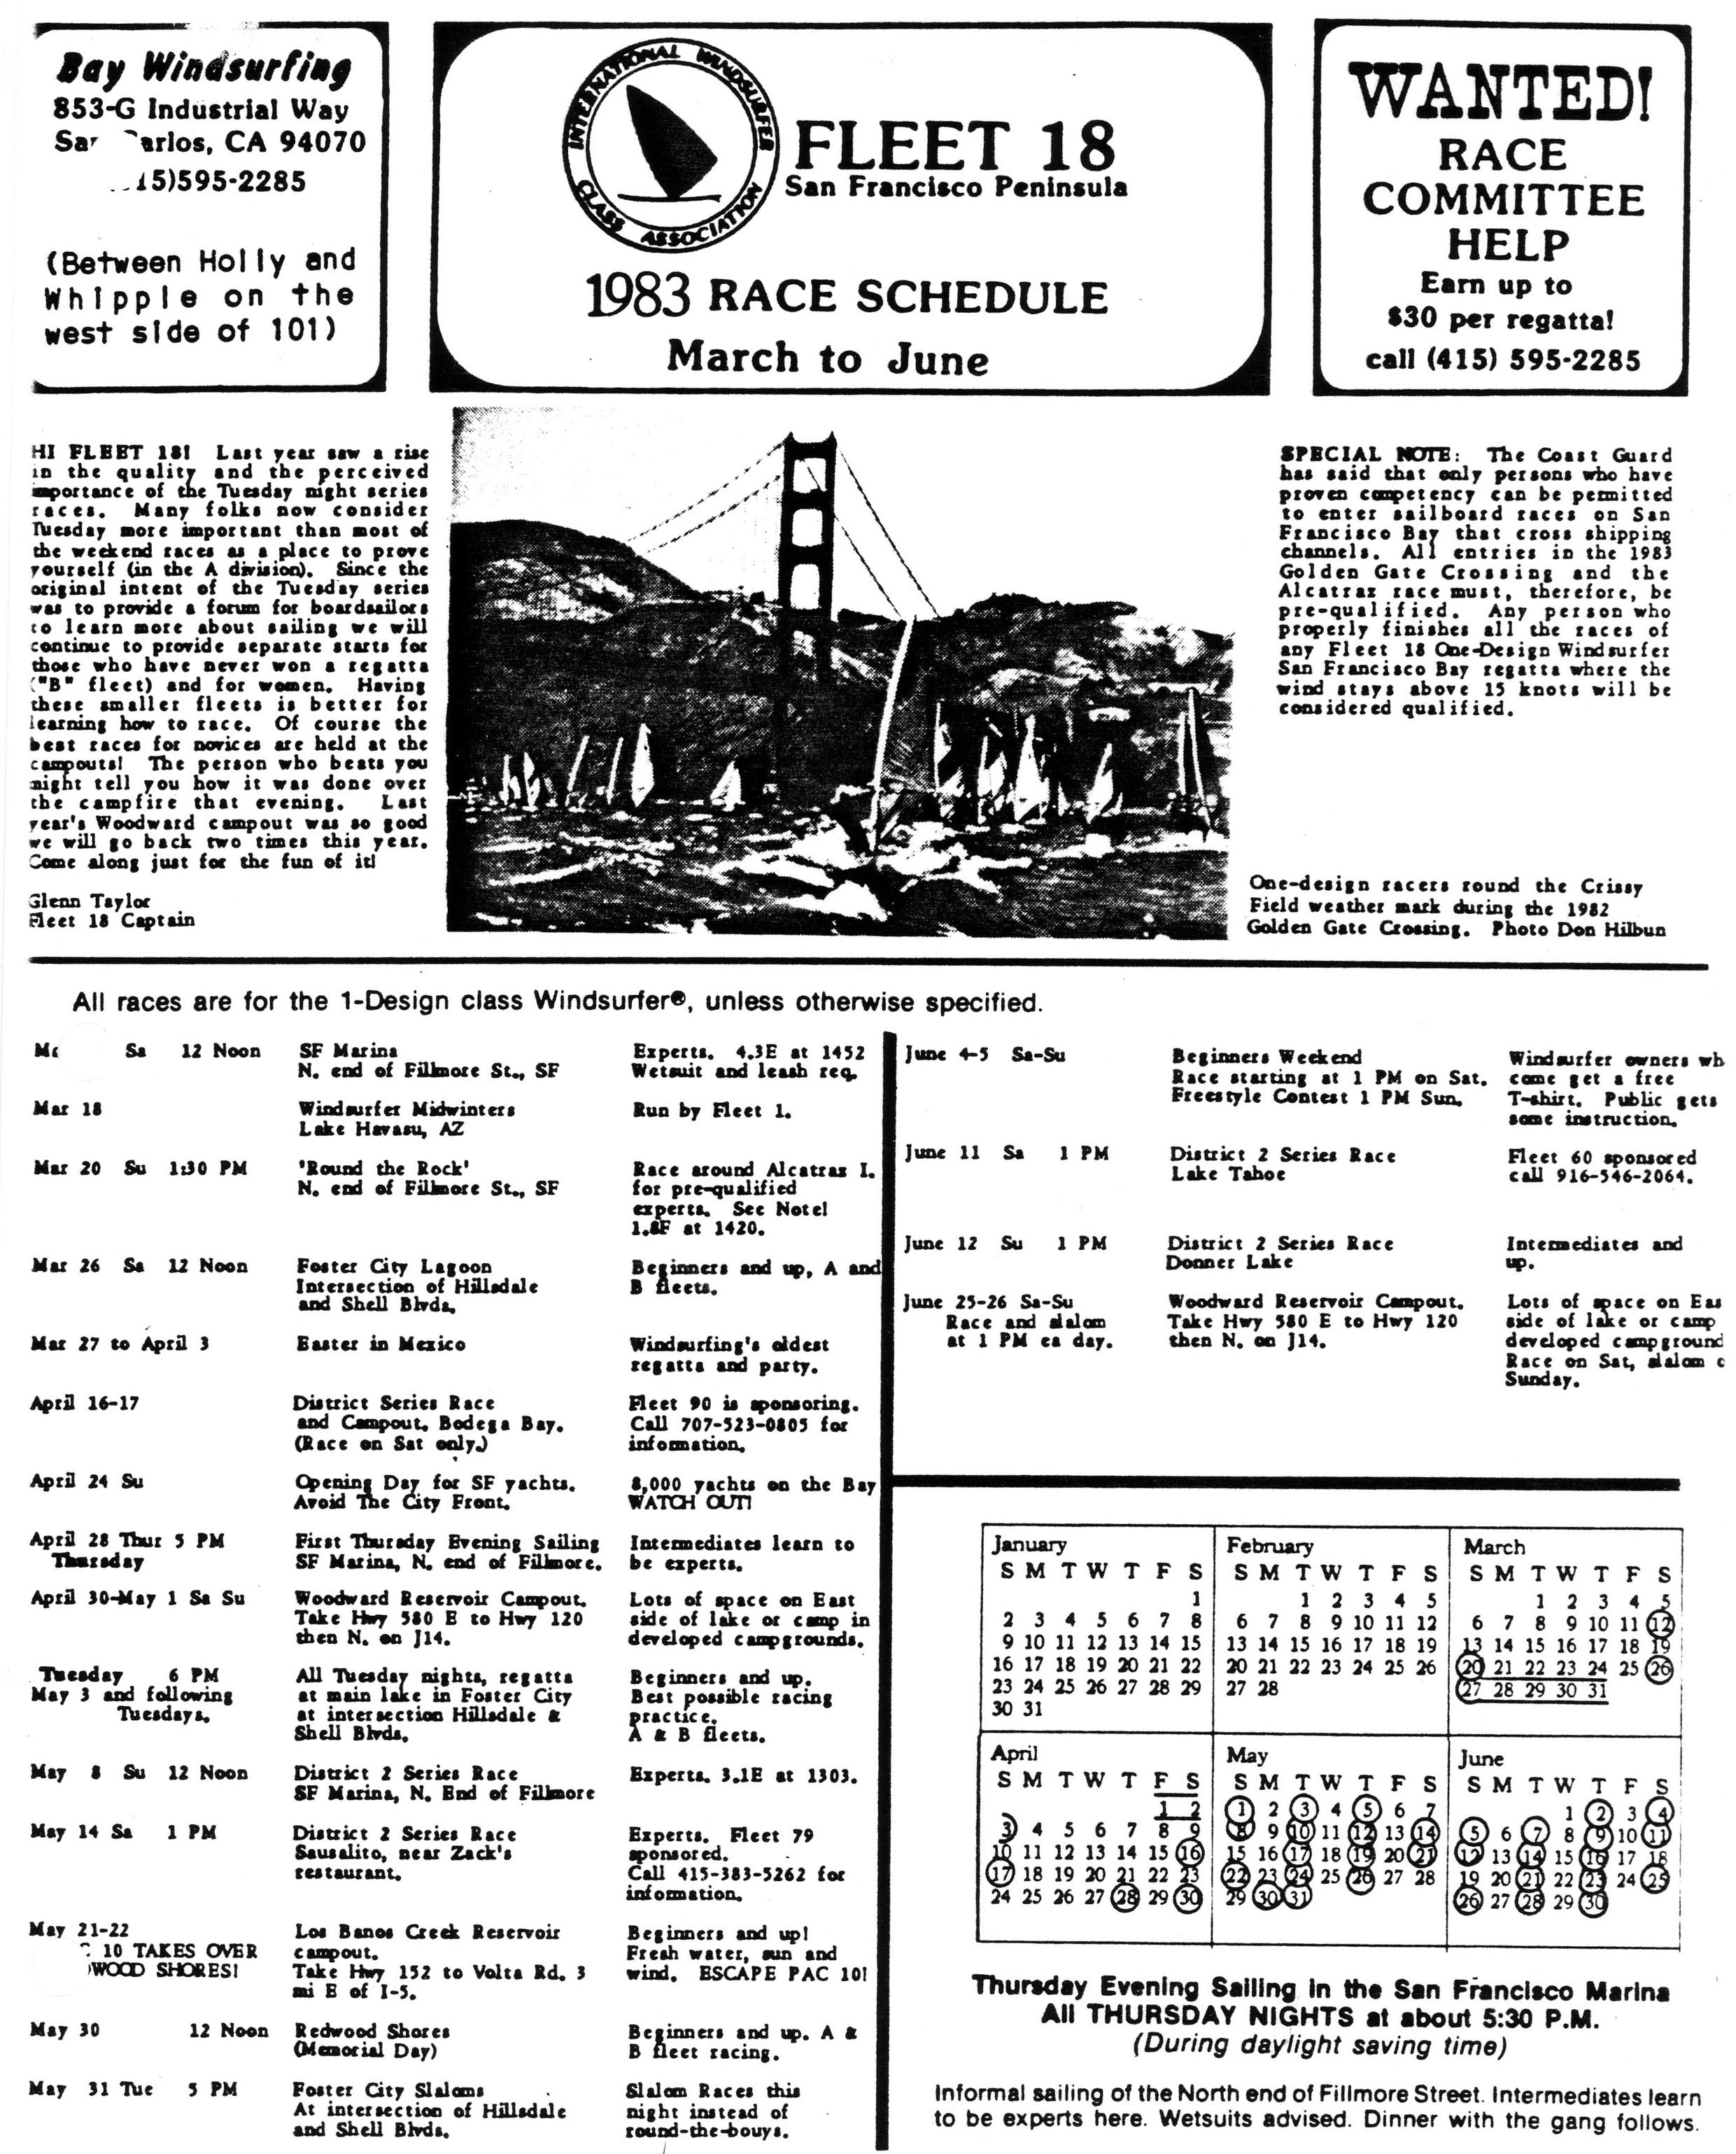 Fleet 18 Schedule of Events, 1983